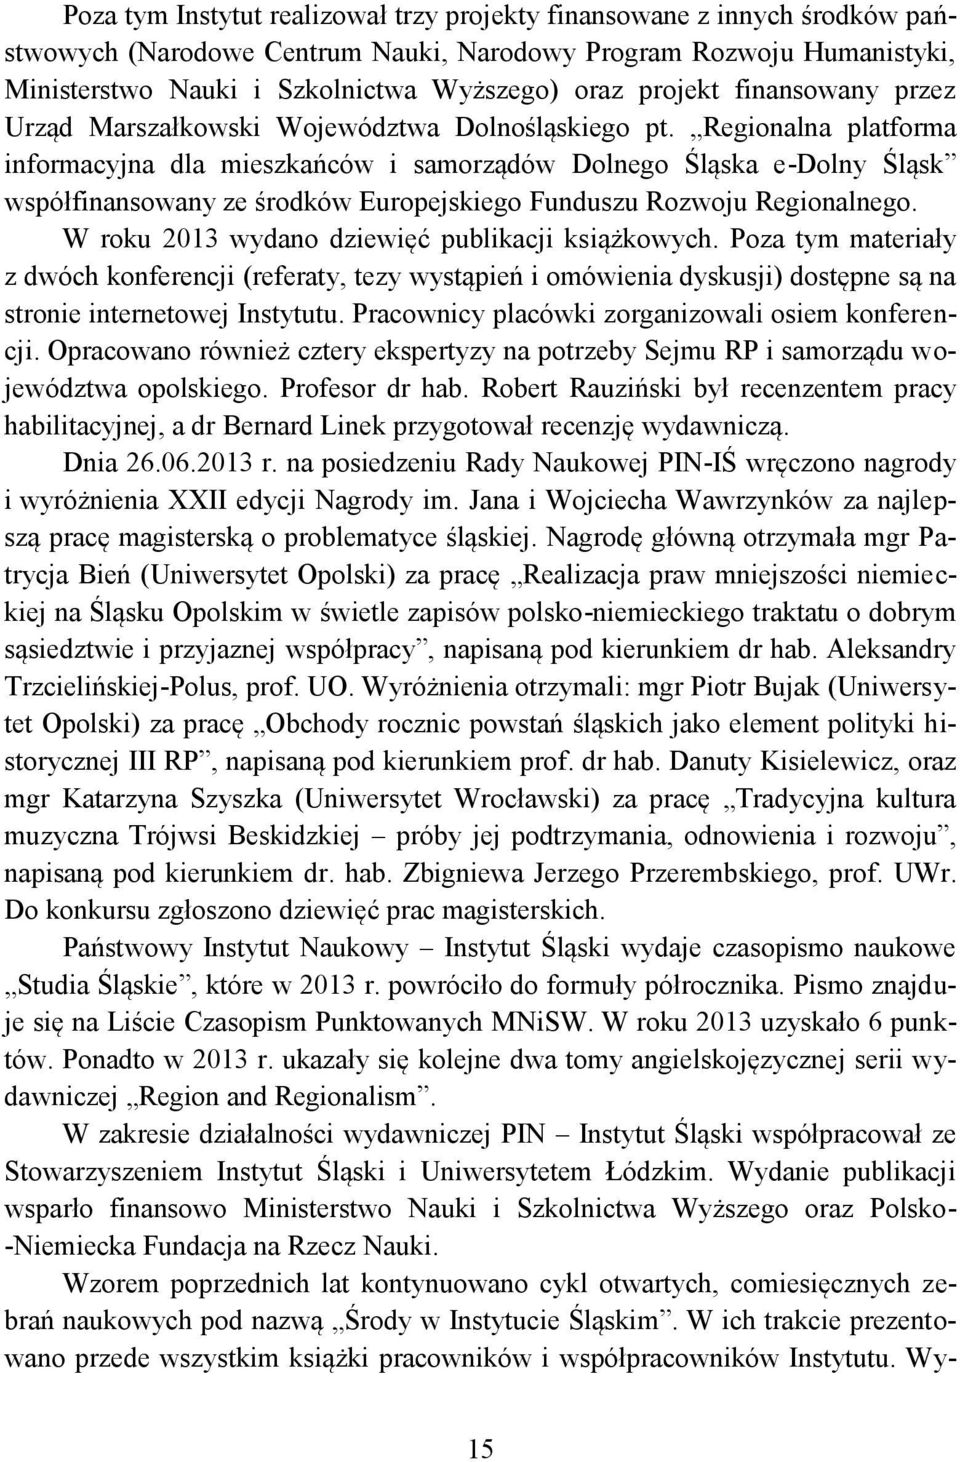 Regionalna platforma informacyjna dla mieszkańców i samorządów Dolnego Śląska e-dolny Śląsk współfinansowany ze środków Europejskiego Funduszu Rozwoju Regionalnego.